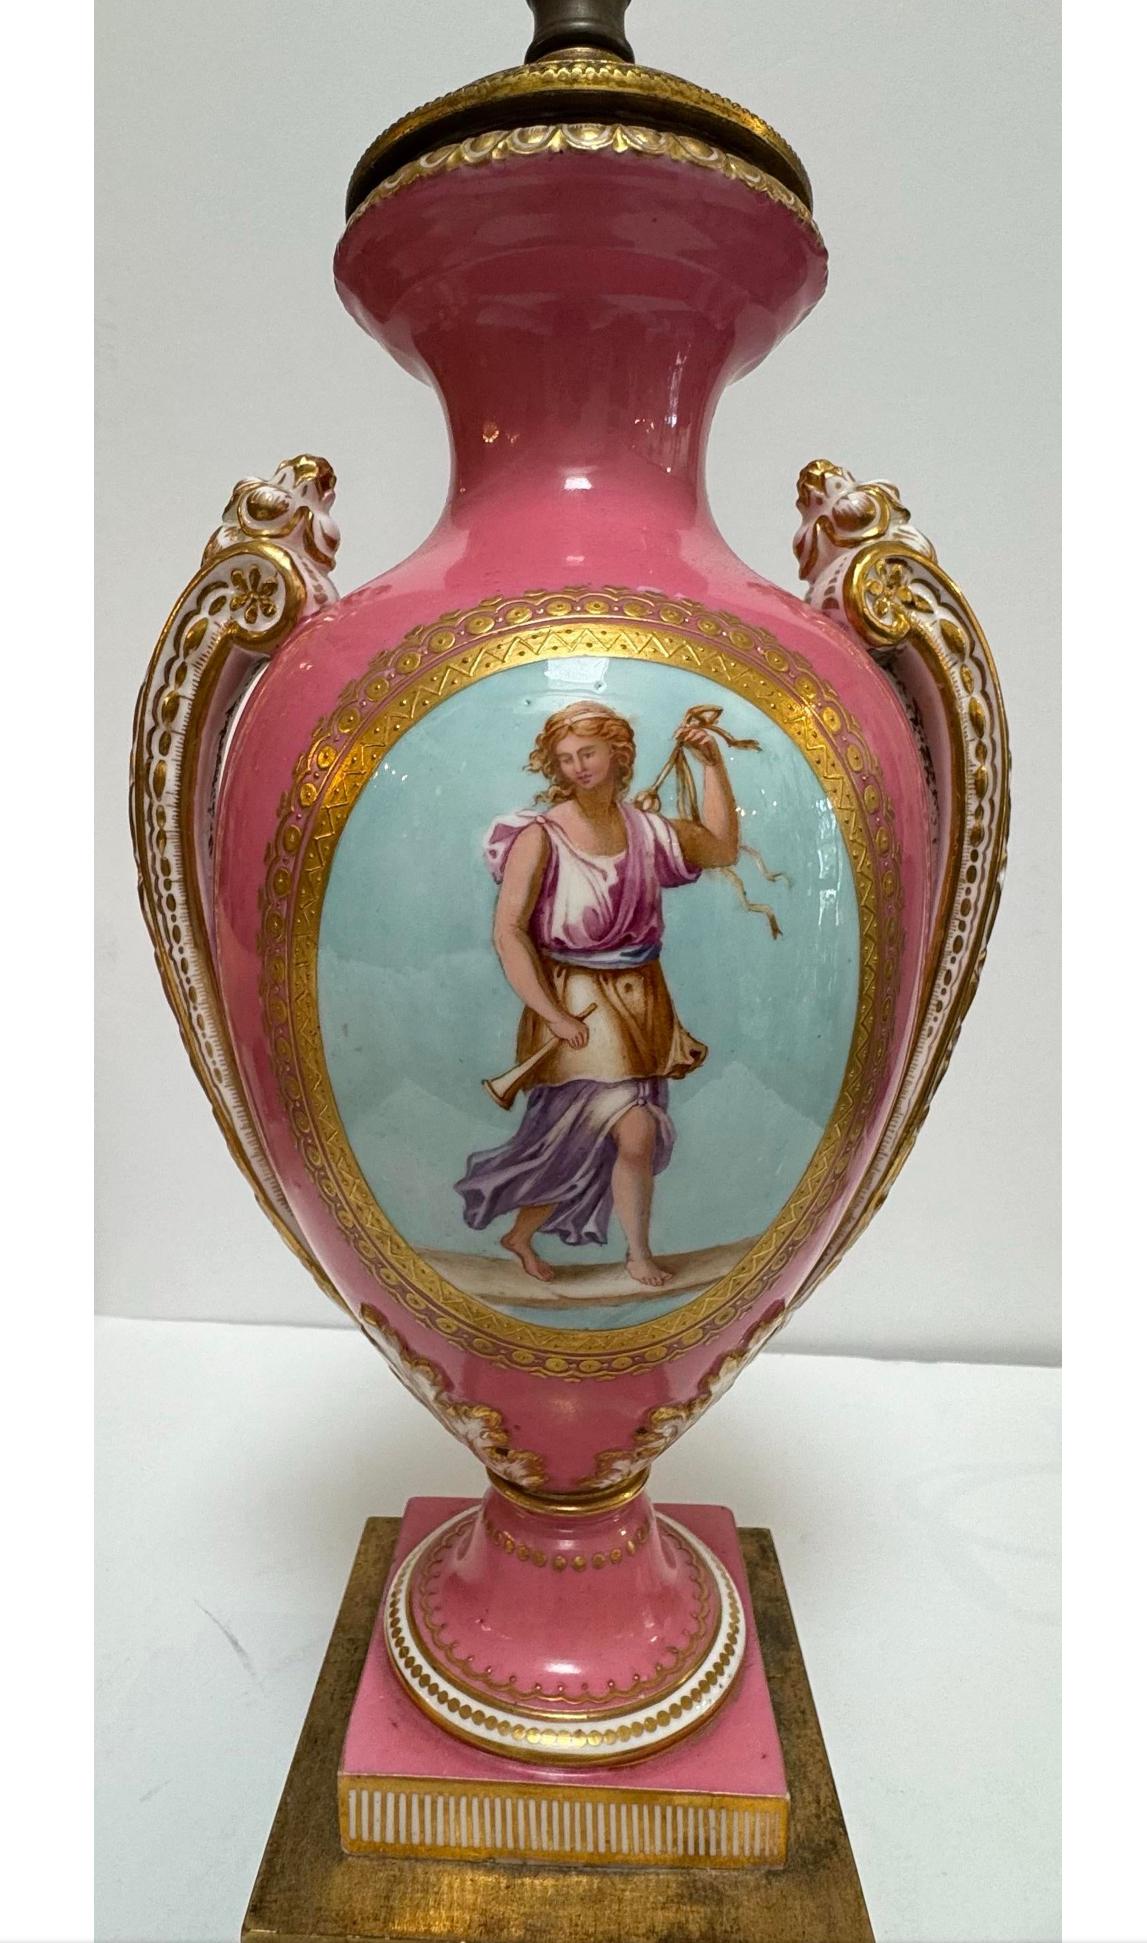 Antique Mid 19c Coalport Hand Painted Porcelain Vase Now a Lamp. C 1855-1860. Later electrified. 